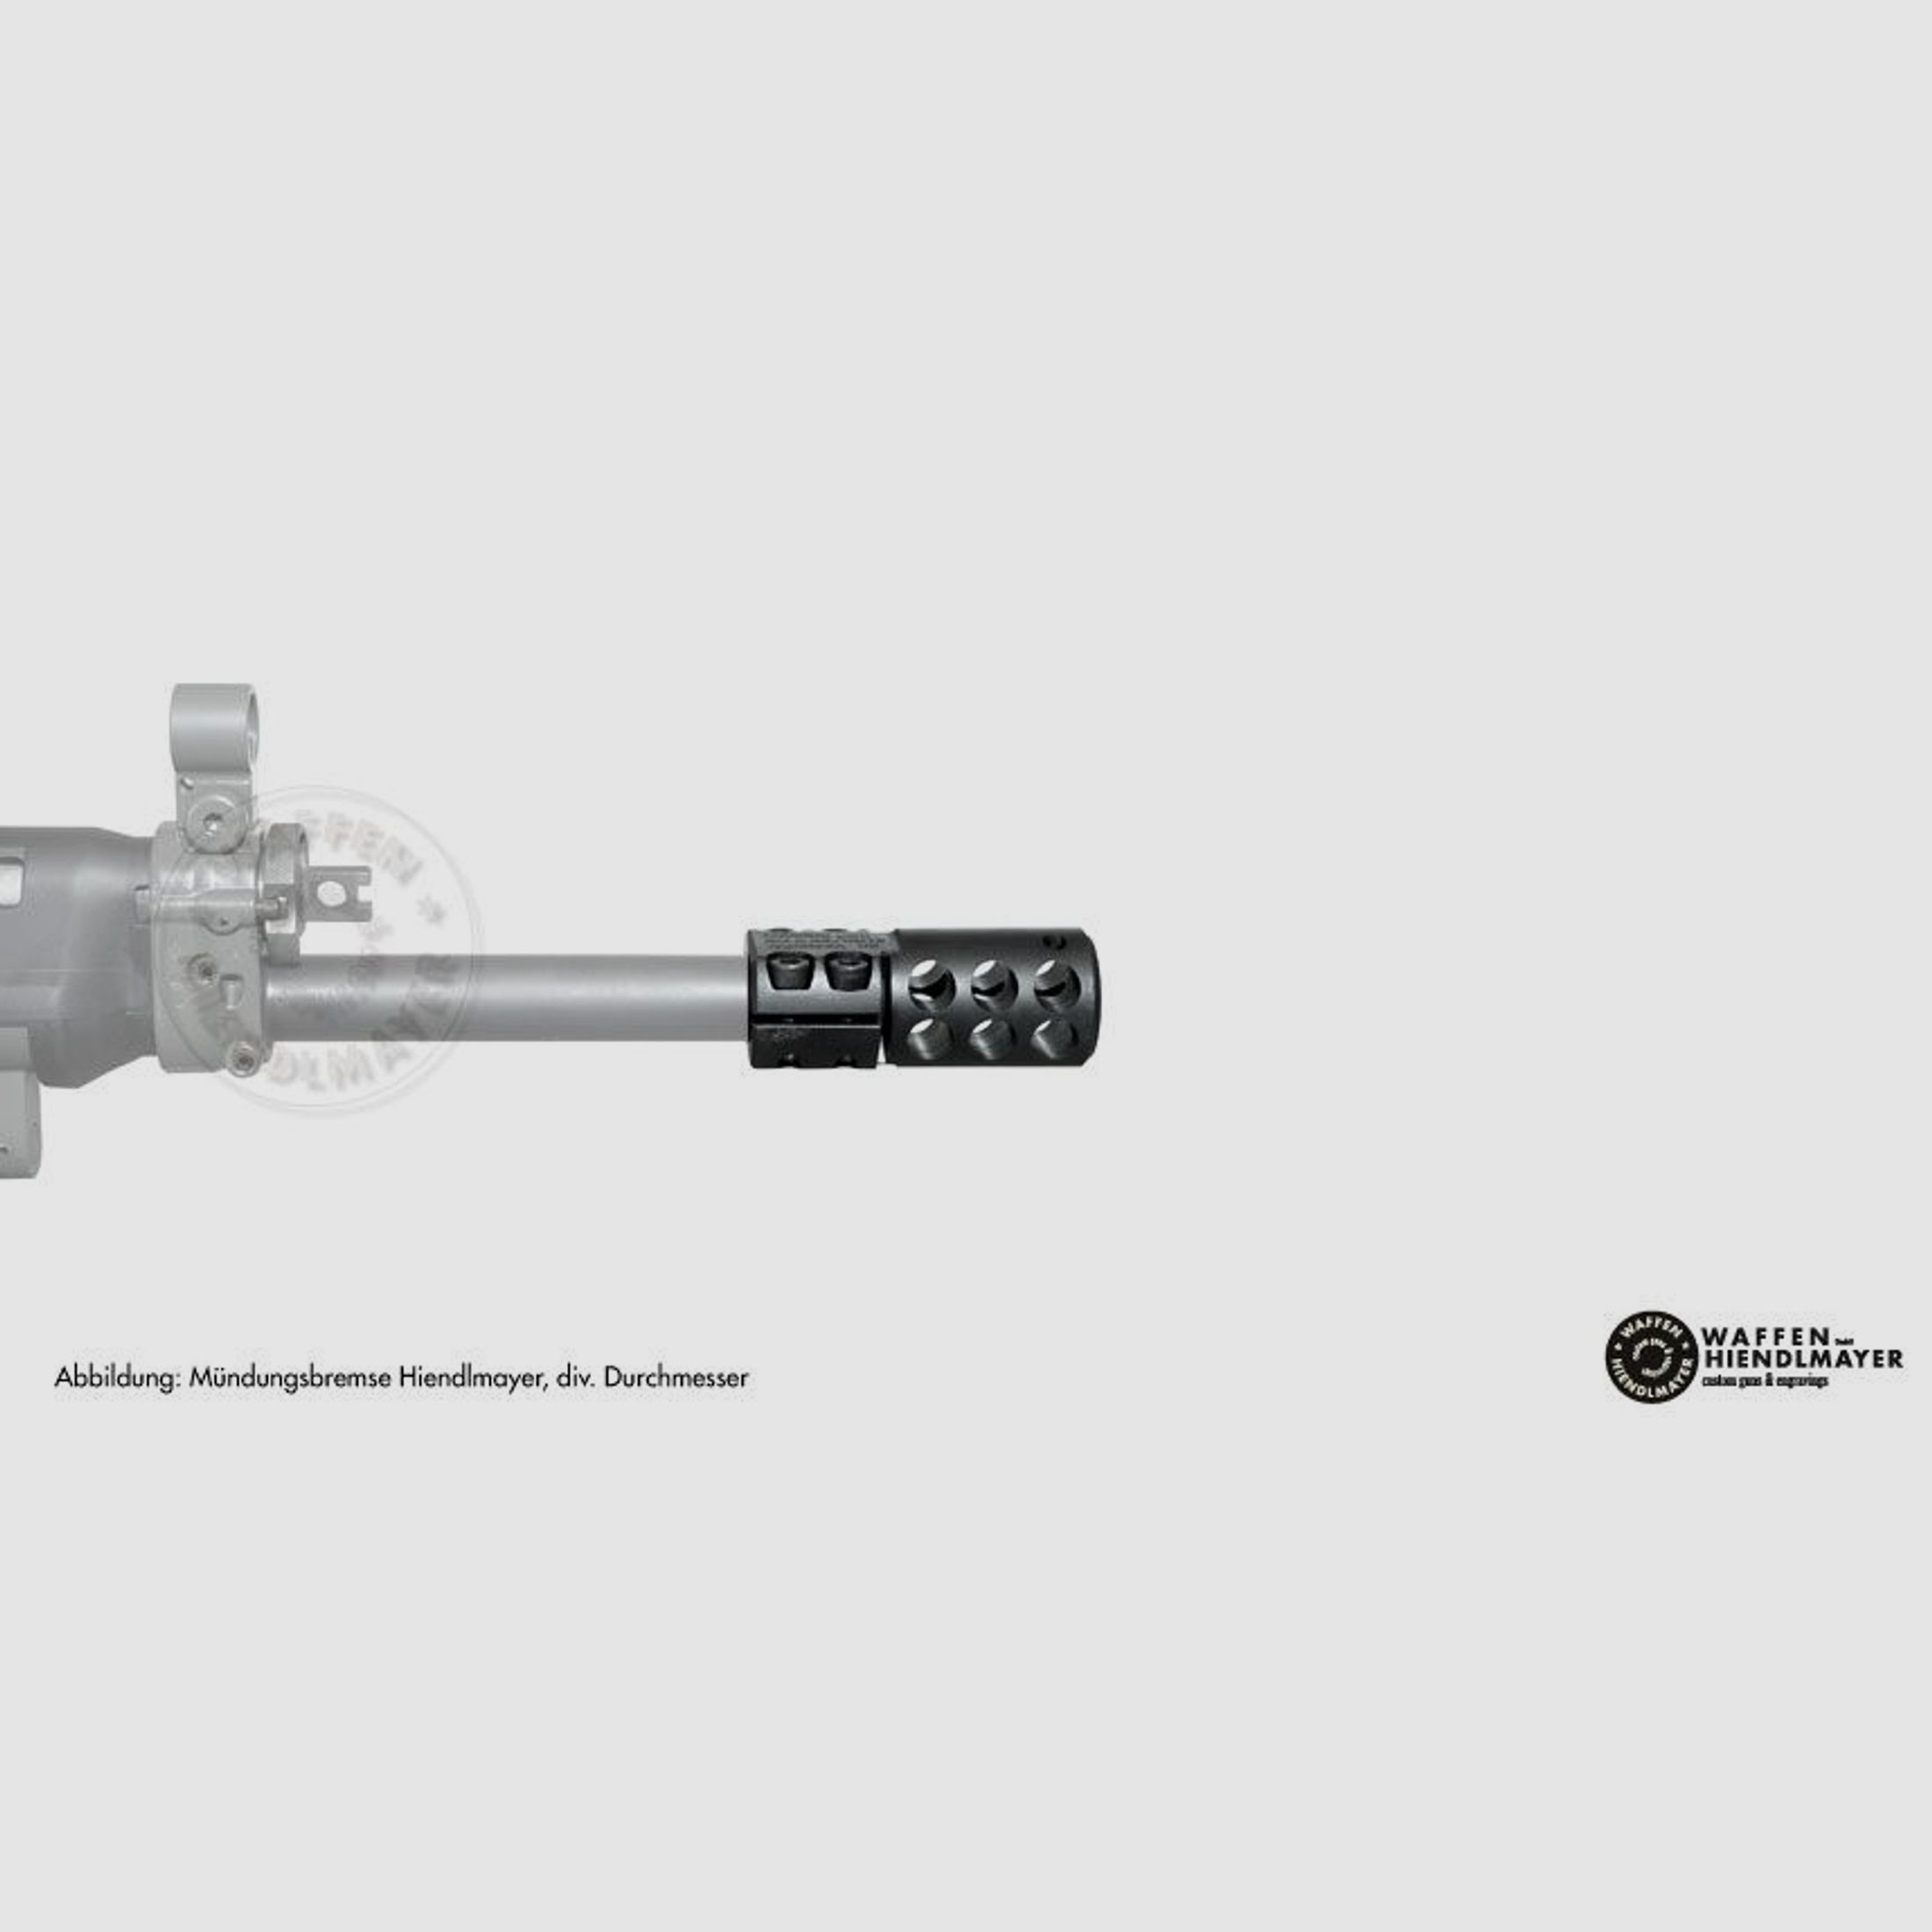 Swiss Arms	 SG 550 Zivil Match Kempf